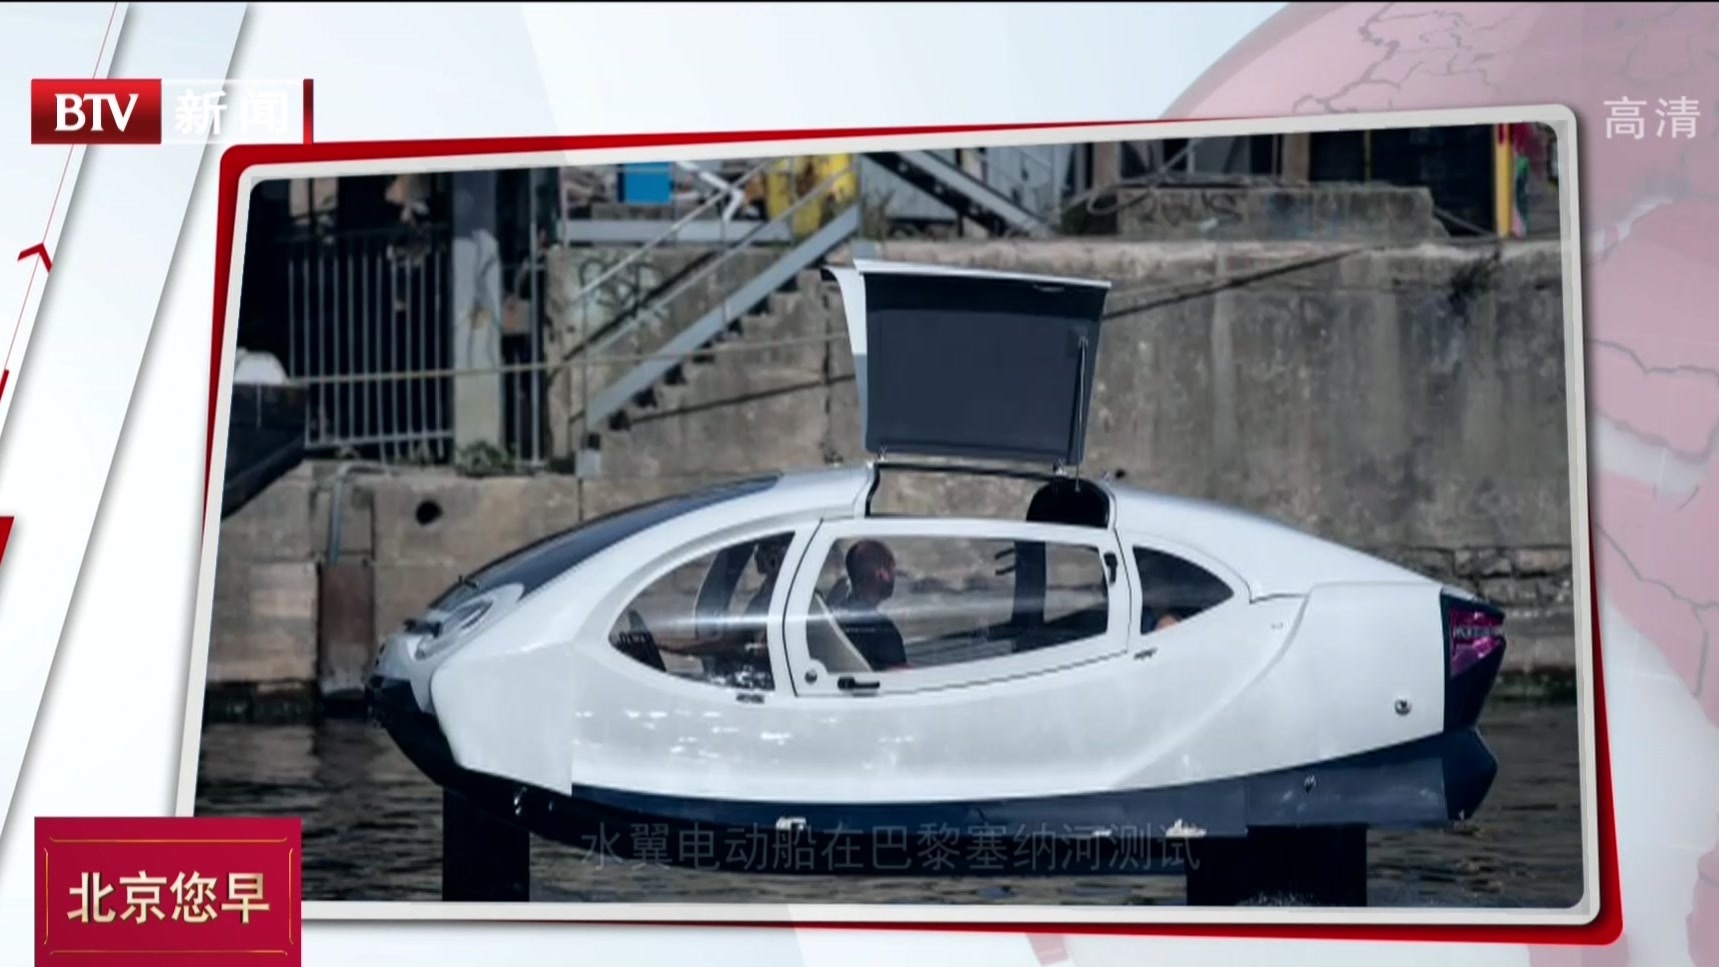 水翼电动船在巴黎塞纳河测试